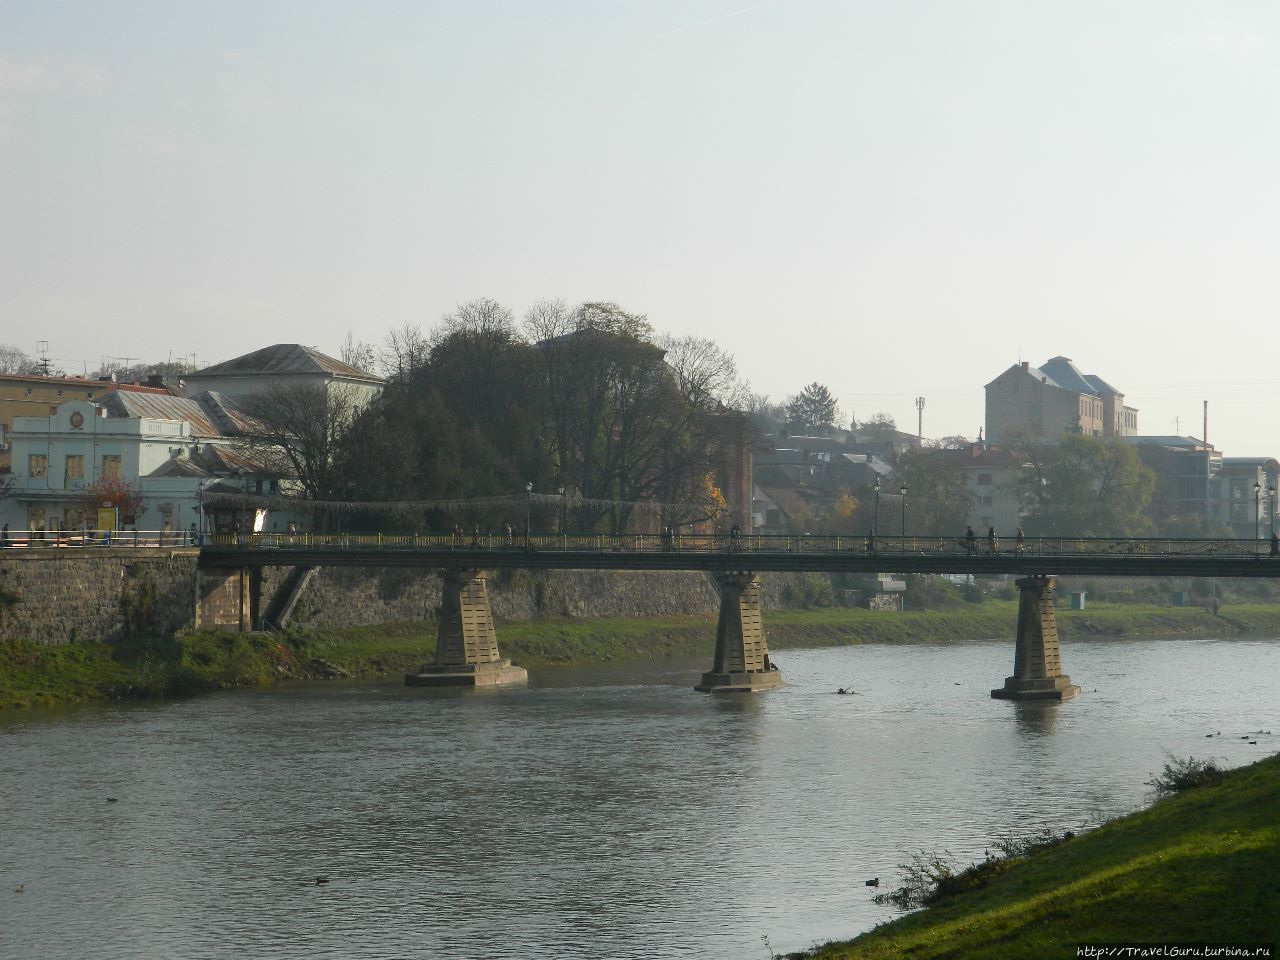 Мост в старый город. Ужгород, Украина